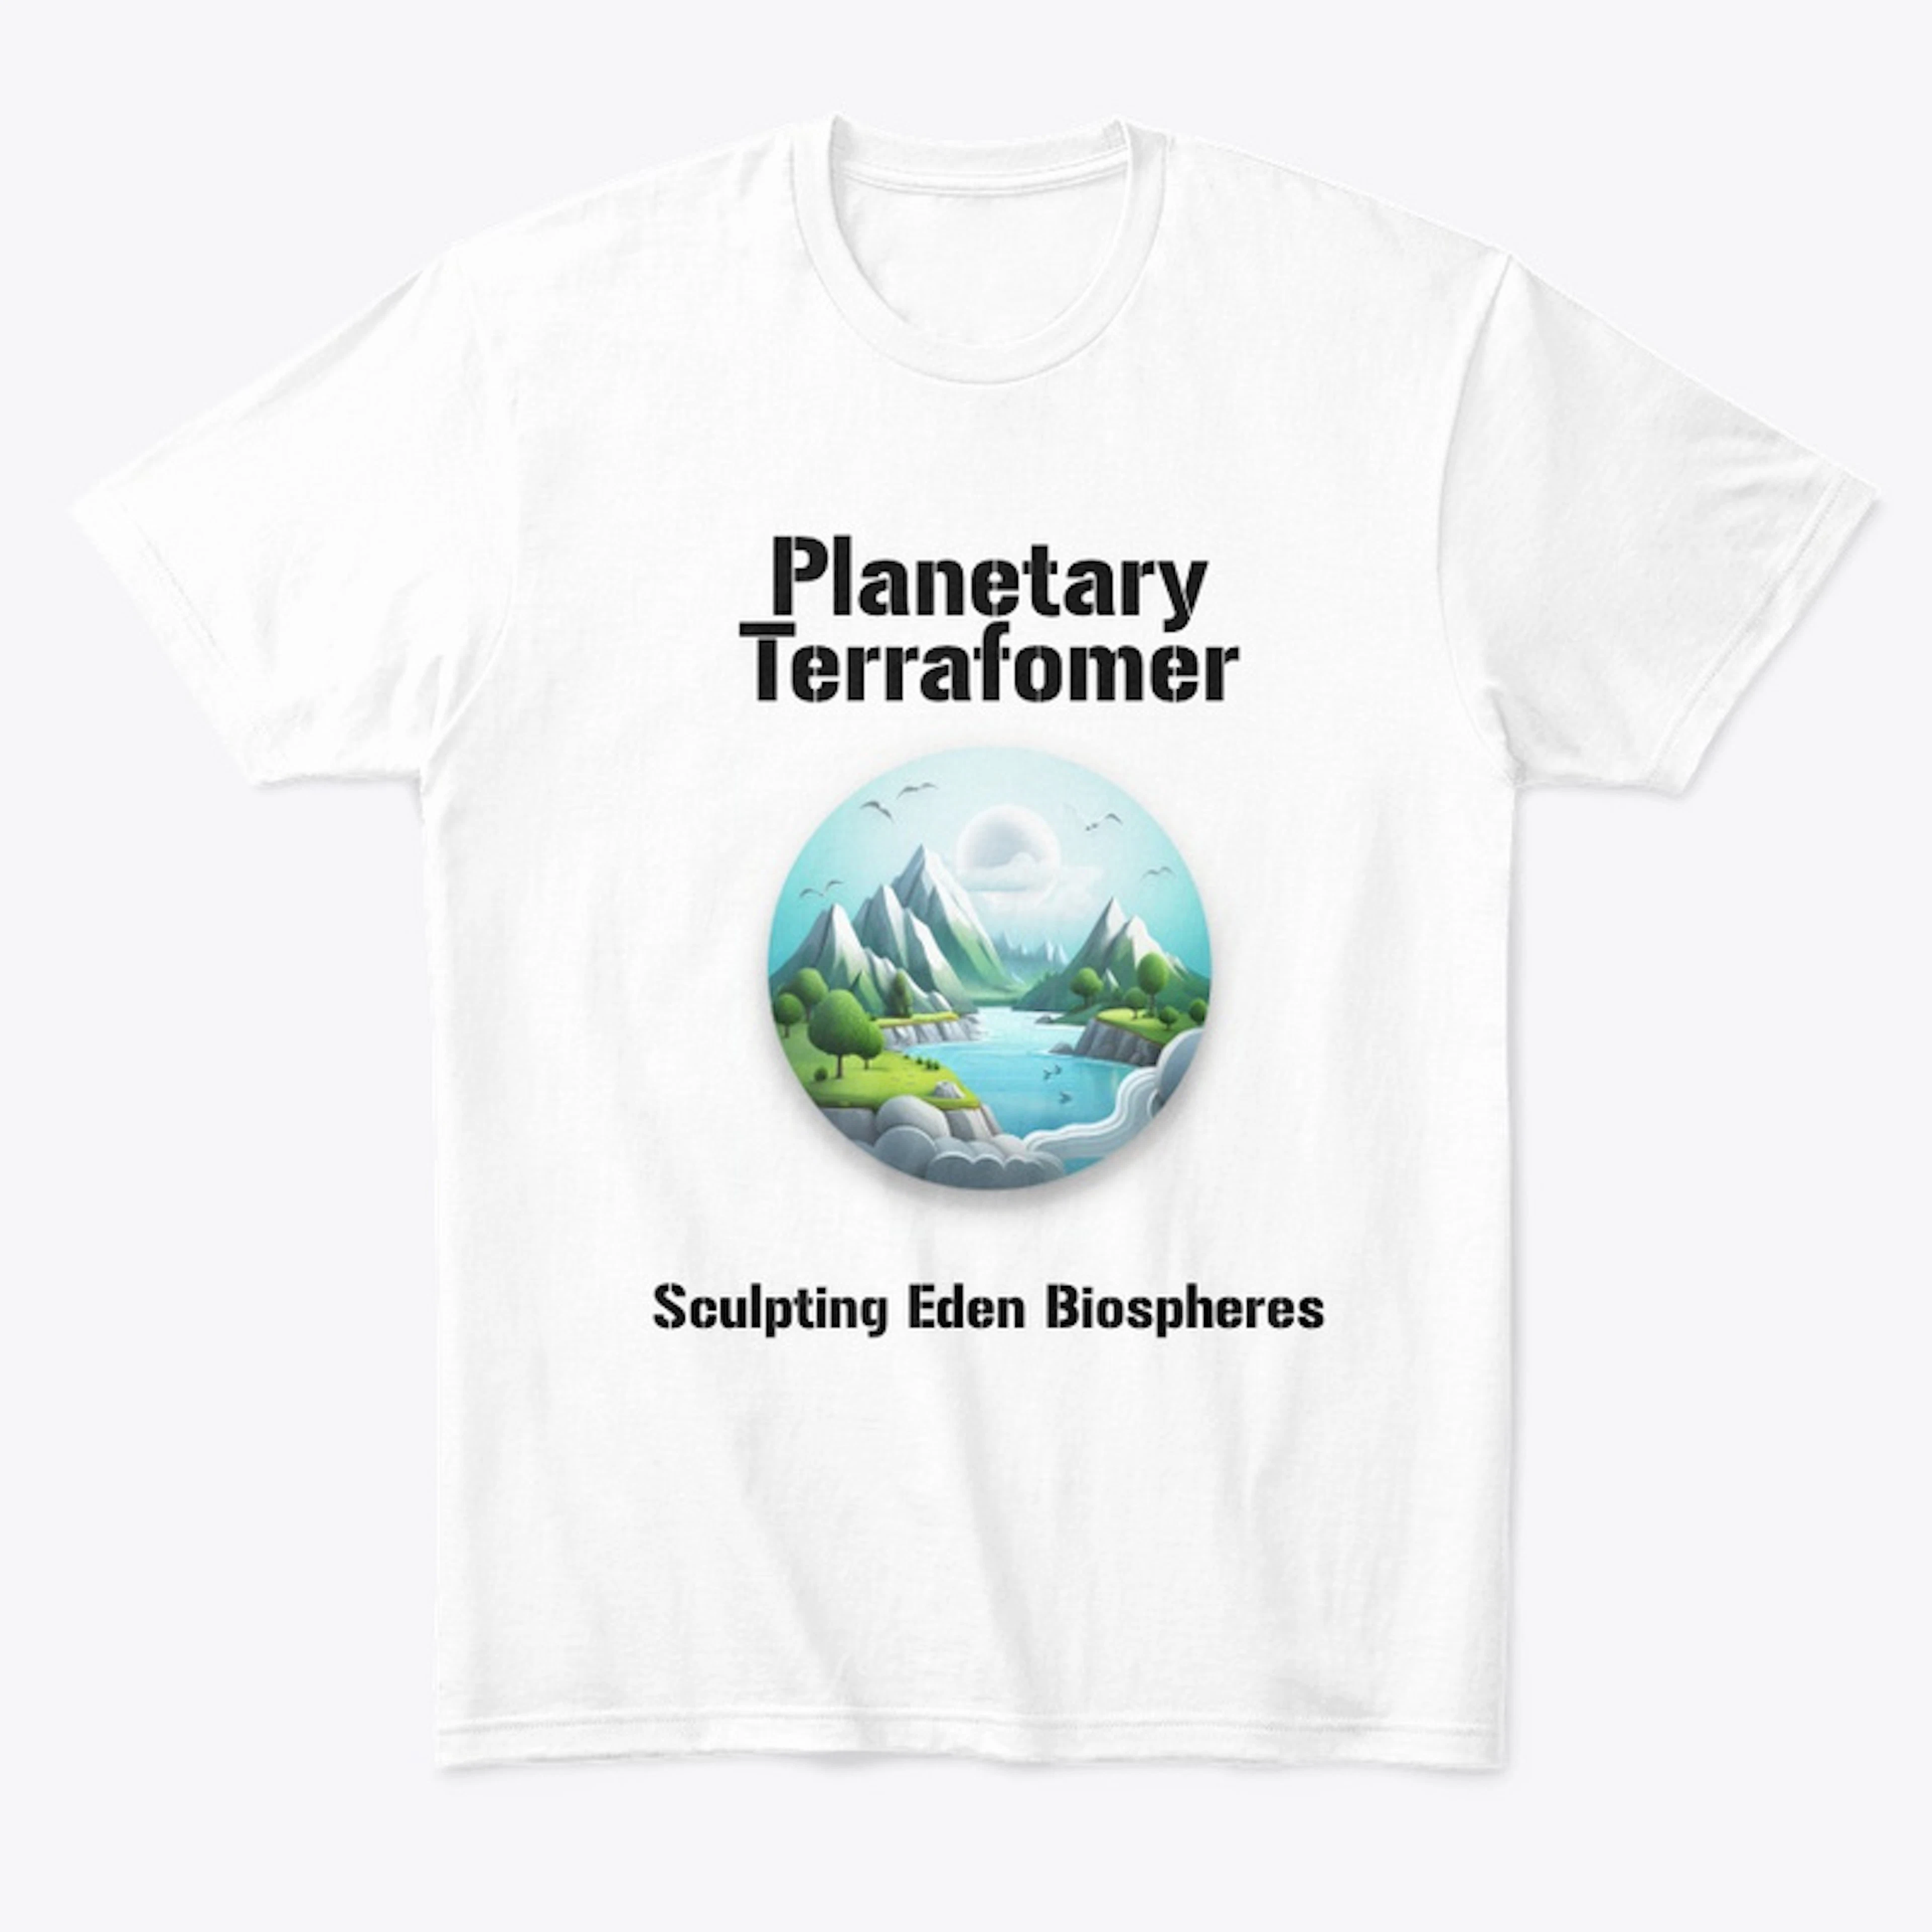 Planetary Terraformer